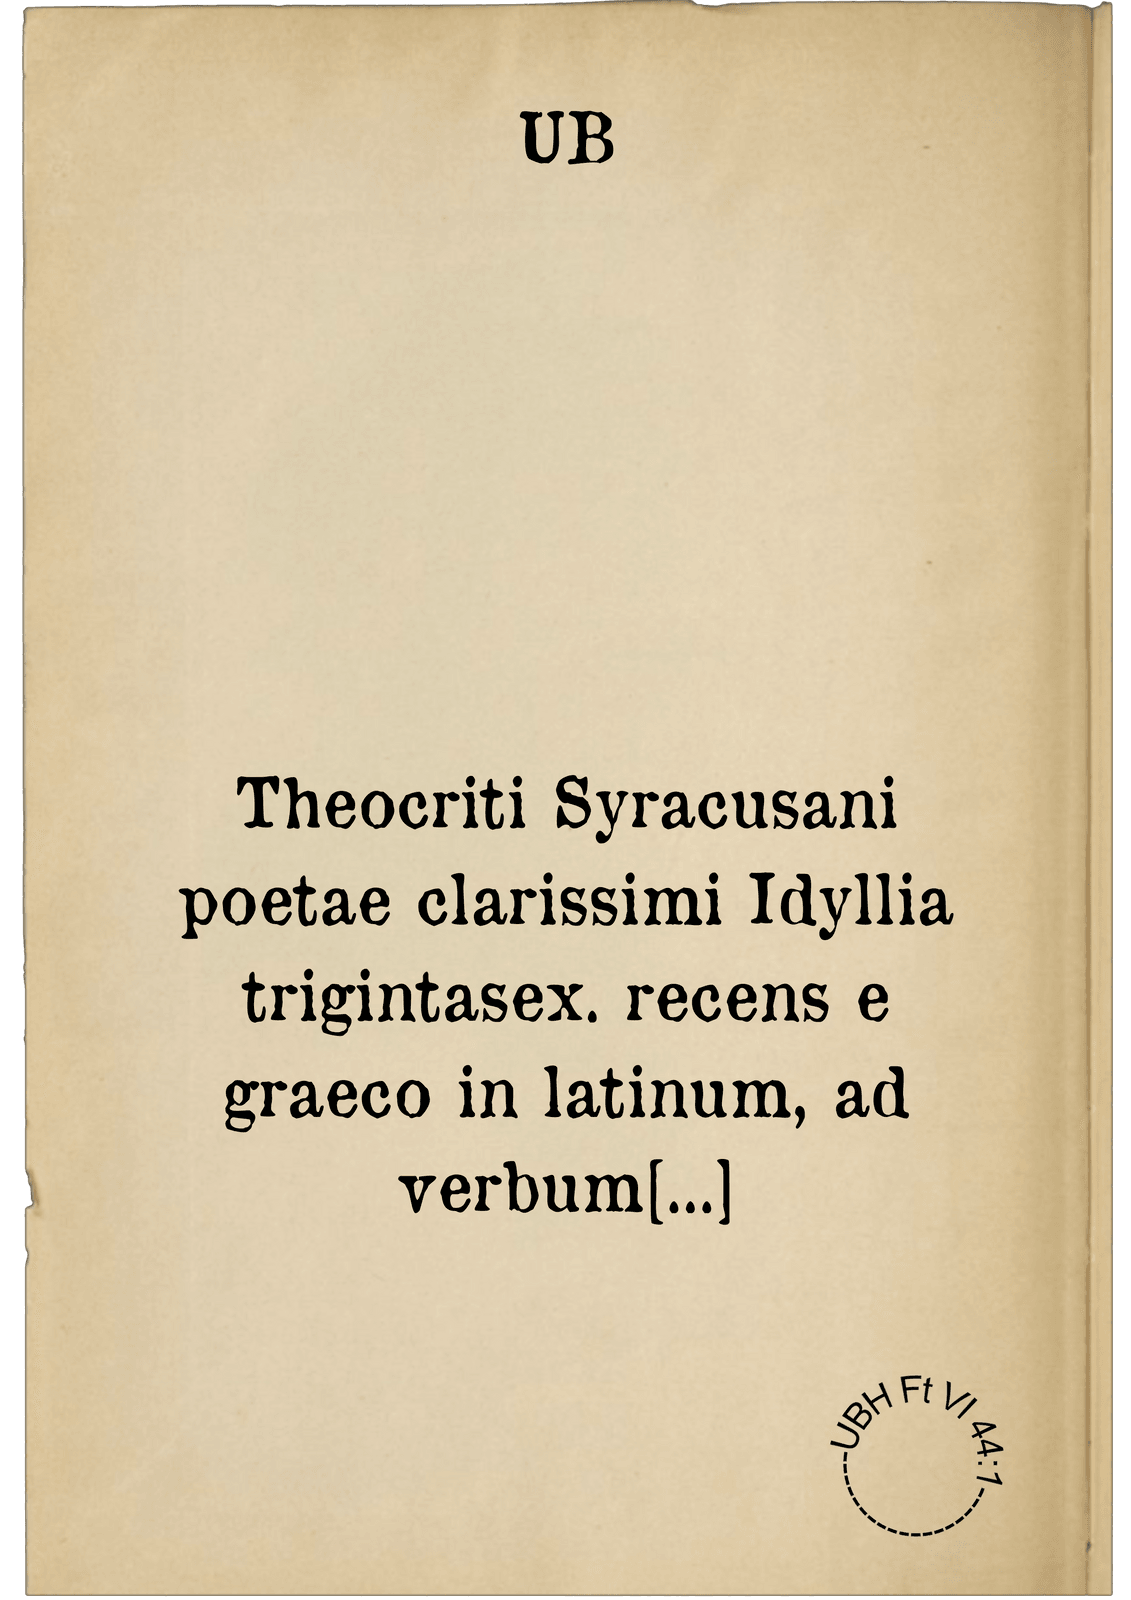 Theocriti Syracusani poetae clarissimi Idyllia trigintasex. recens e graeco in latinum, ad verbum translata